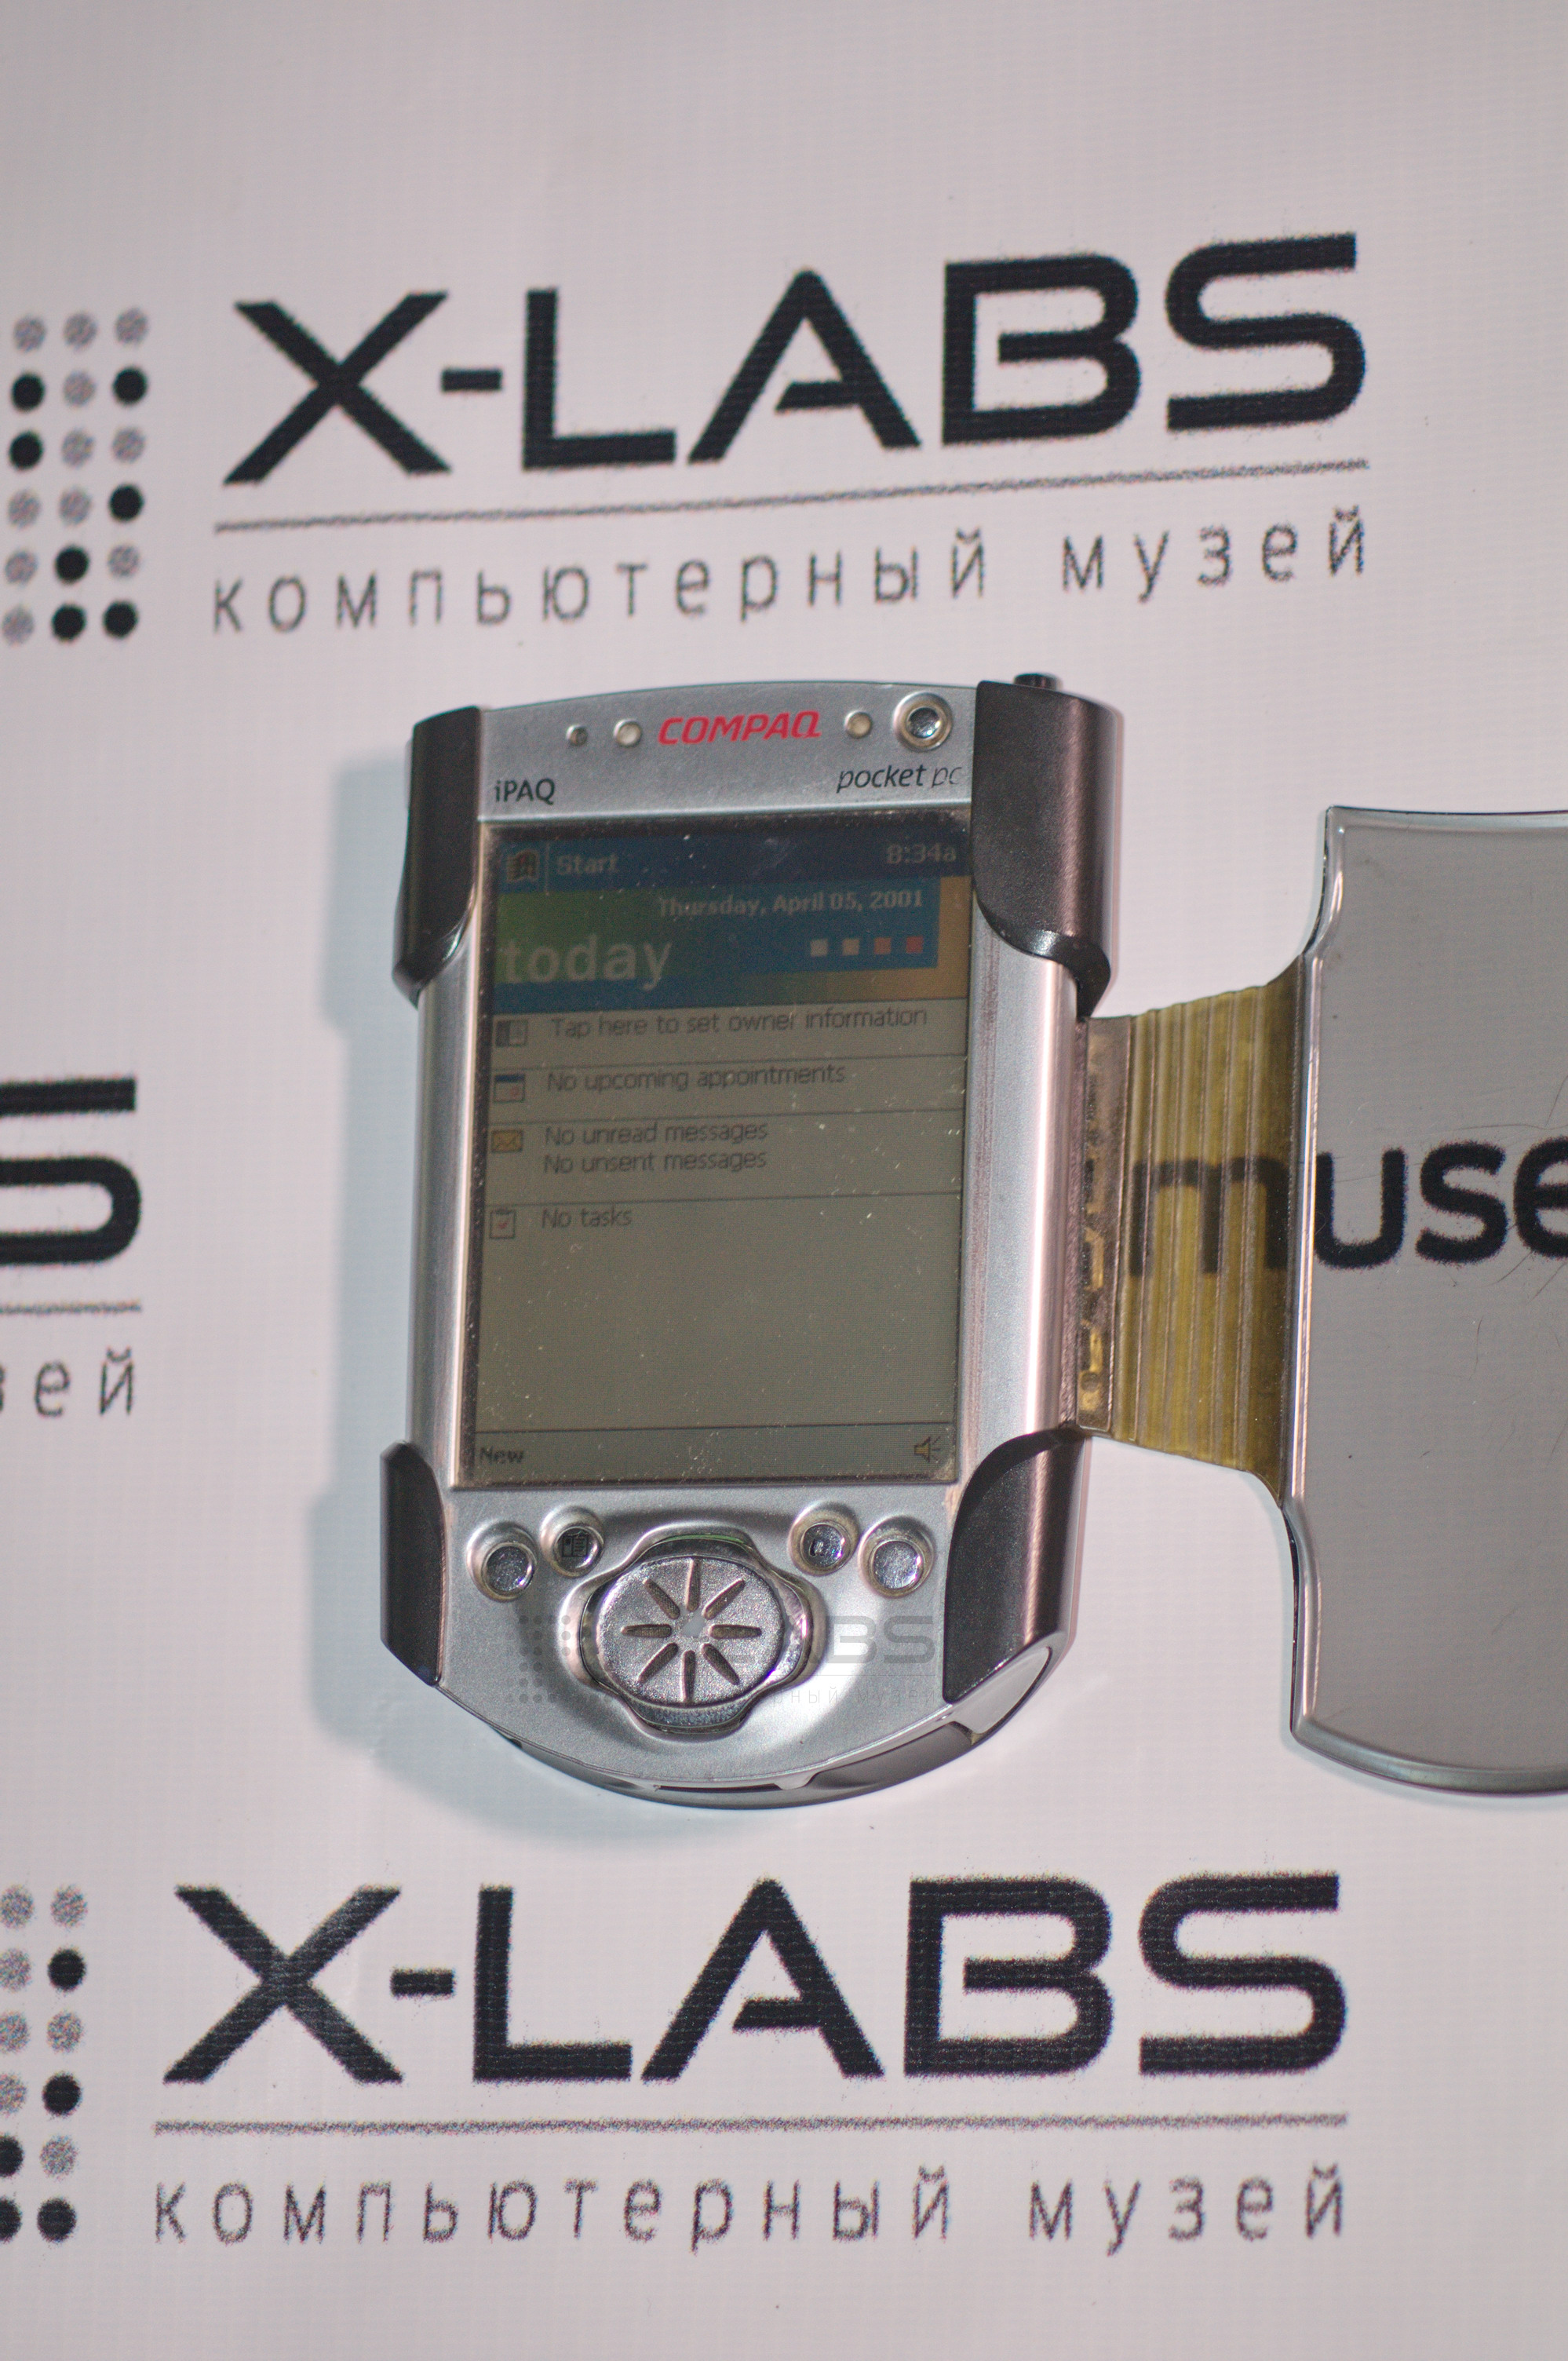 Compaq Pocket PC iPaq 3600 Series